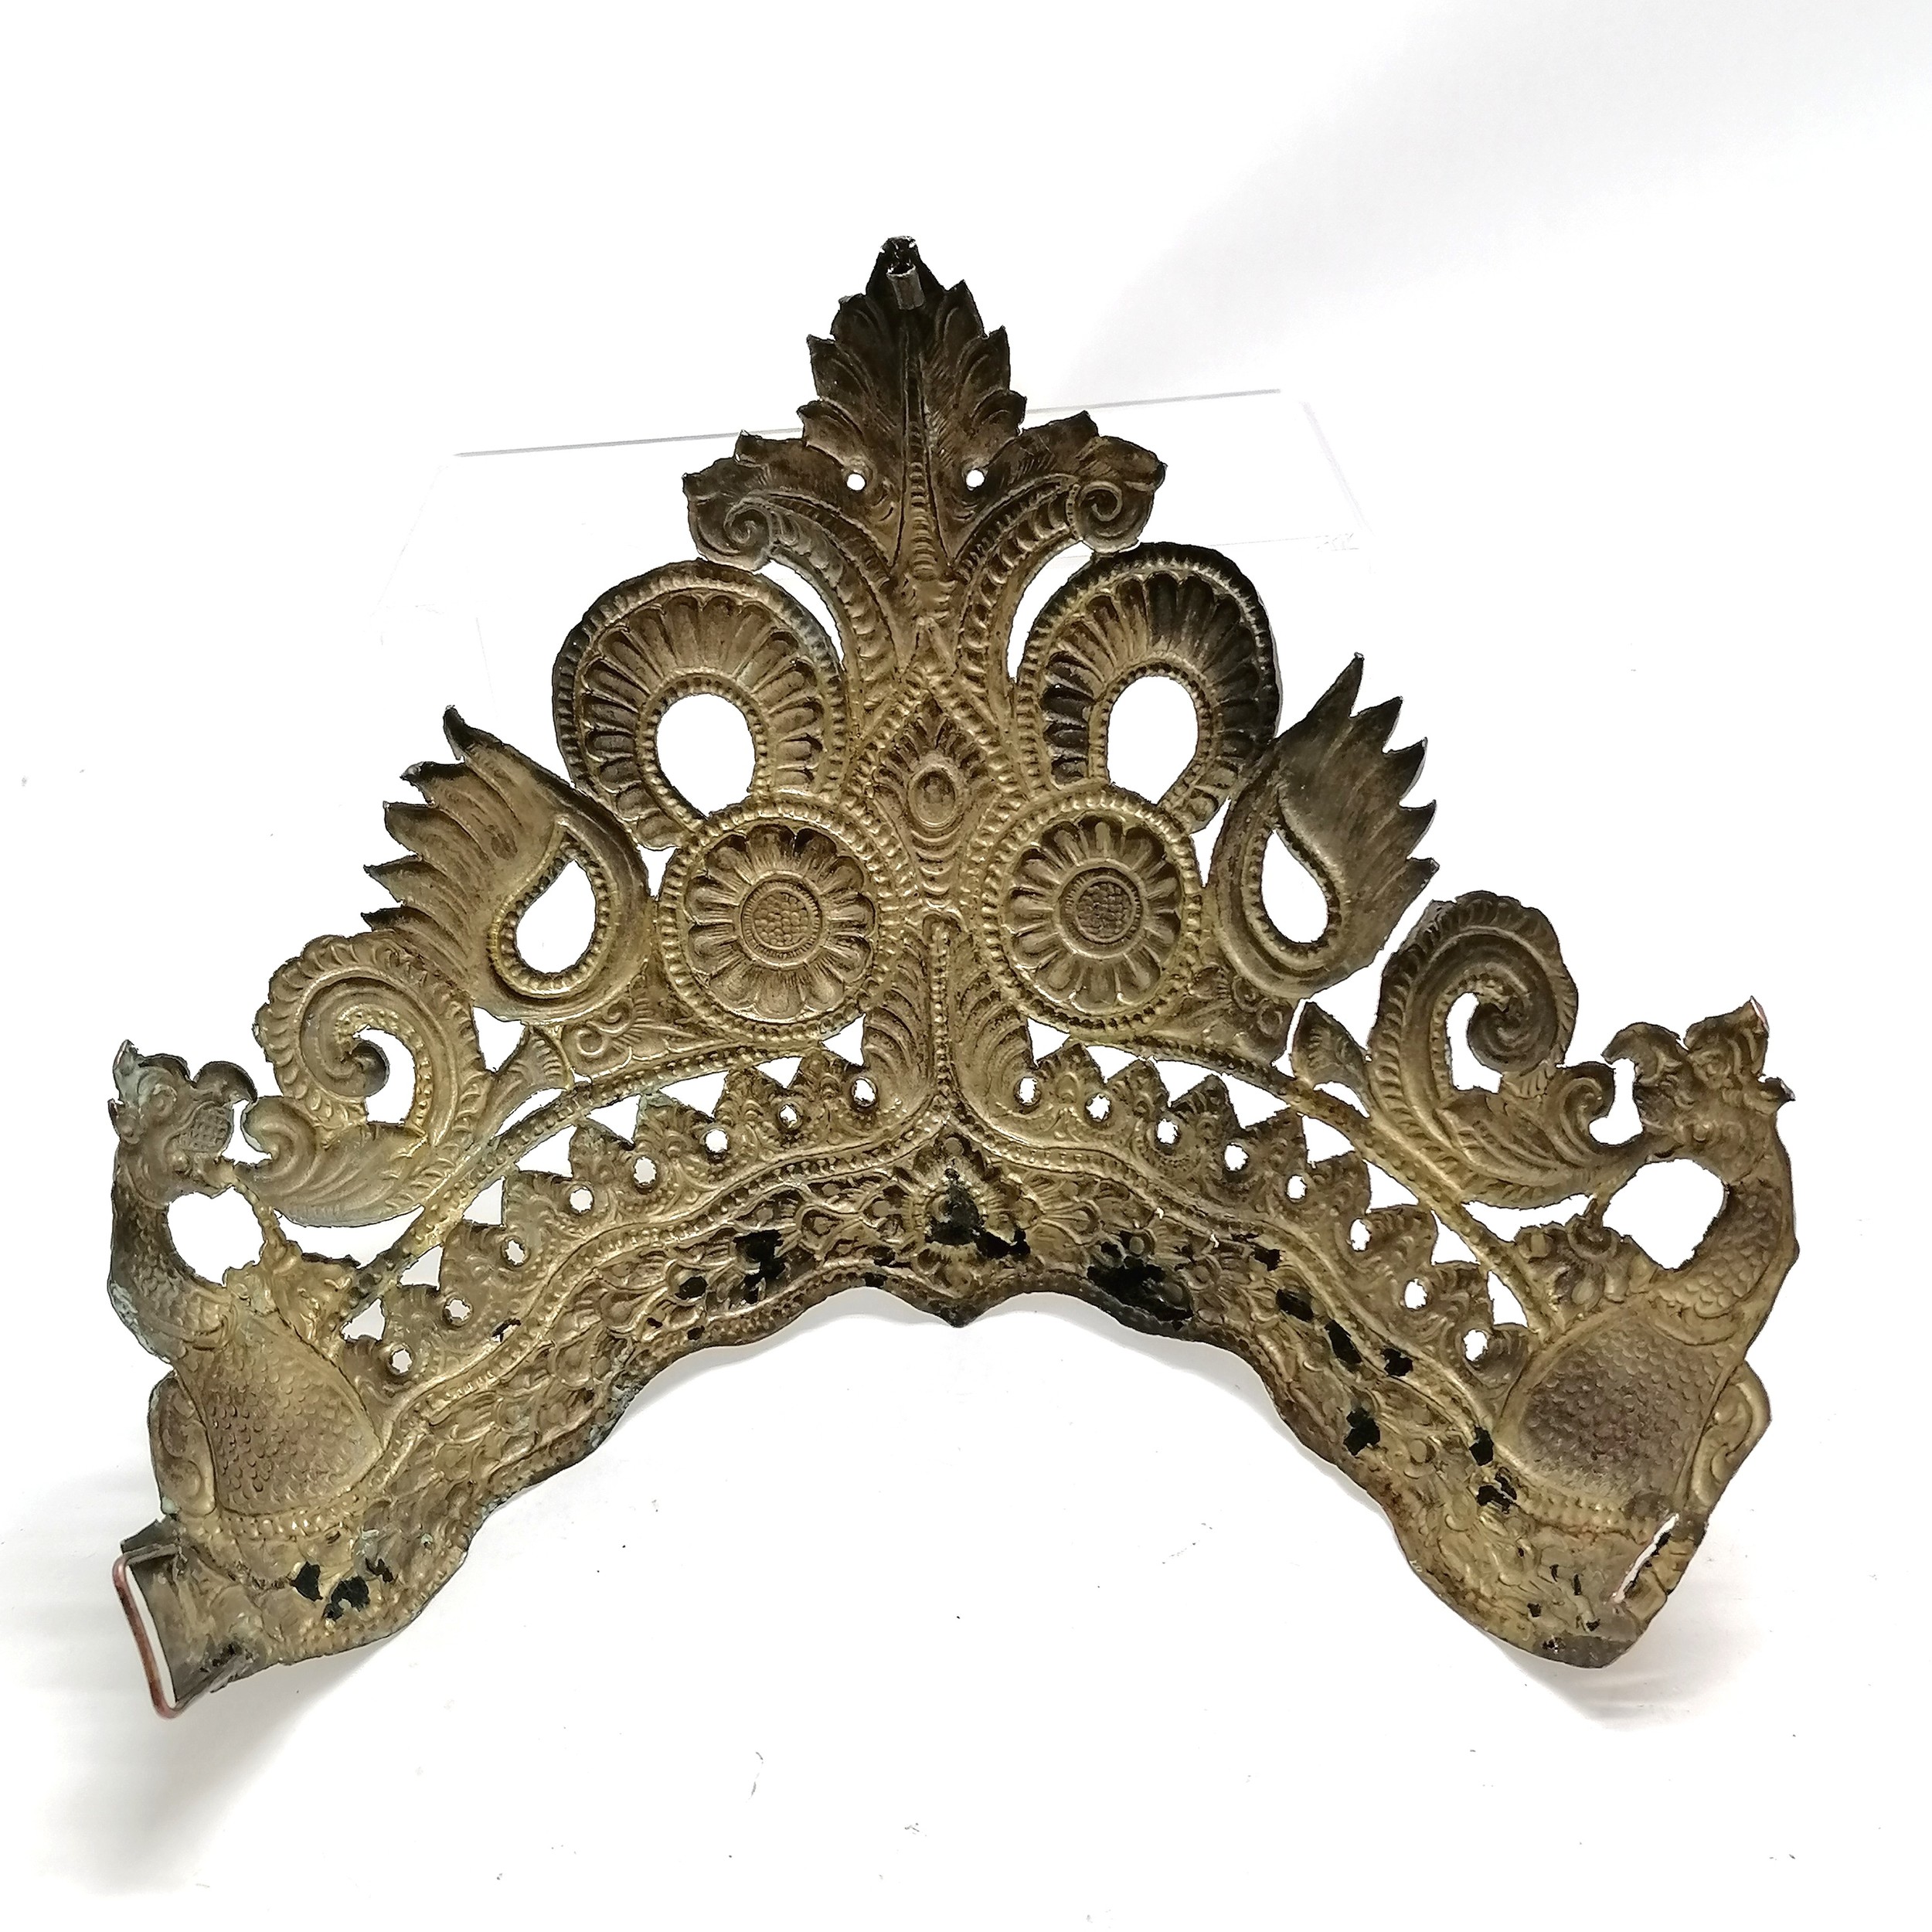 Antique Tibetan repousse copper ceremonial crown - 27cm across x 23cm high - Image 2 of 3